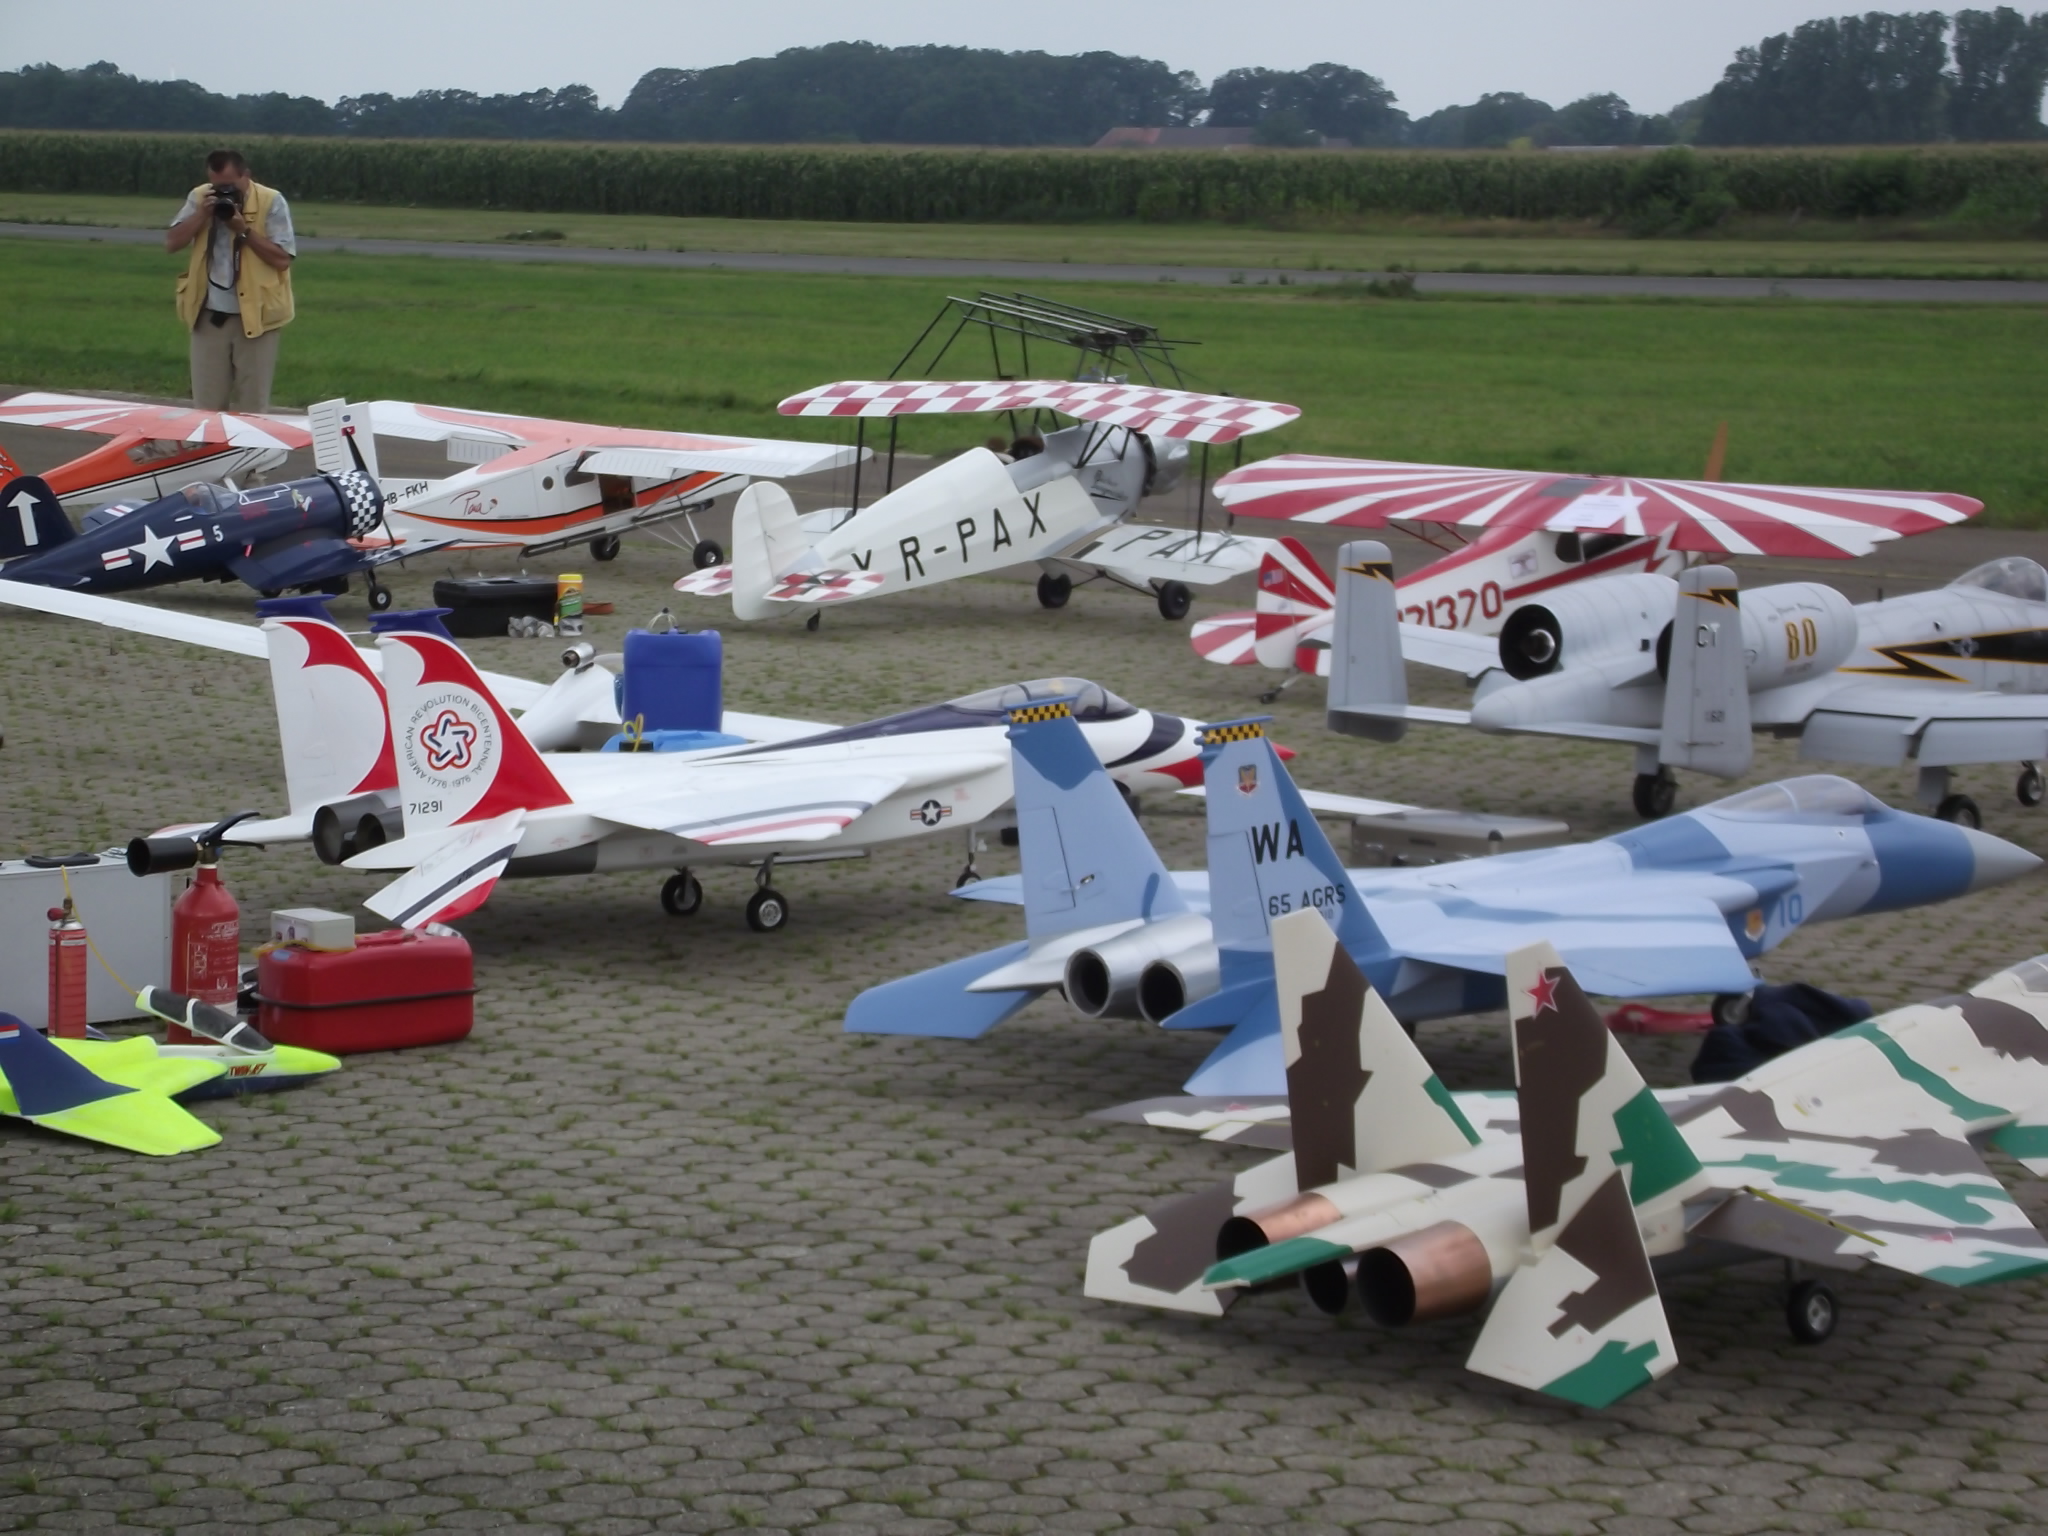 Jet-Flugtage in Ganderkesee - ganz viele verschieden Flugzeugtypen werden hier präsentiert - Ist der andere Fotograph von Qype?